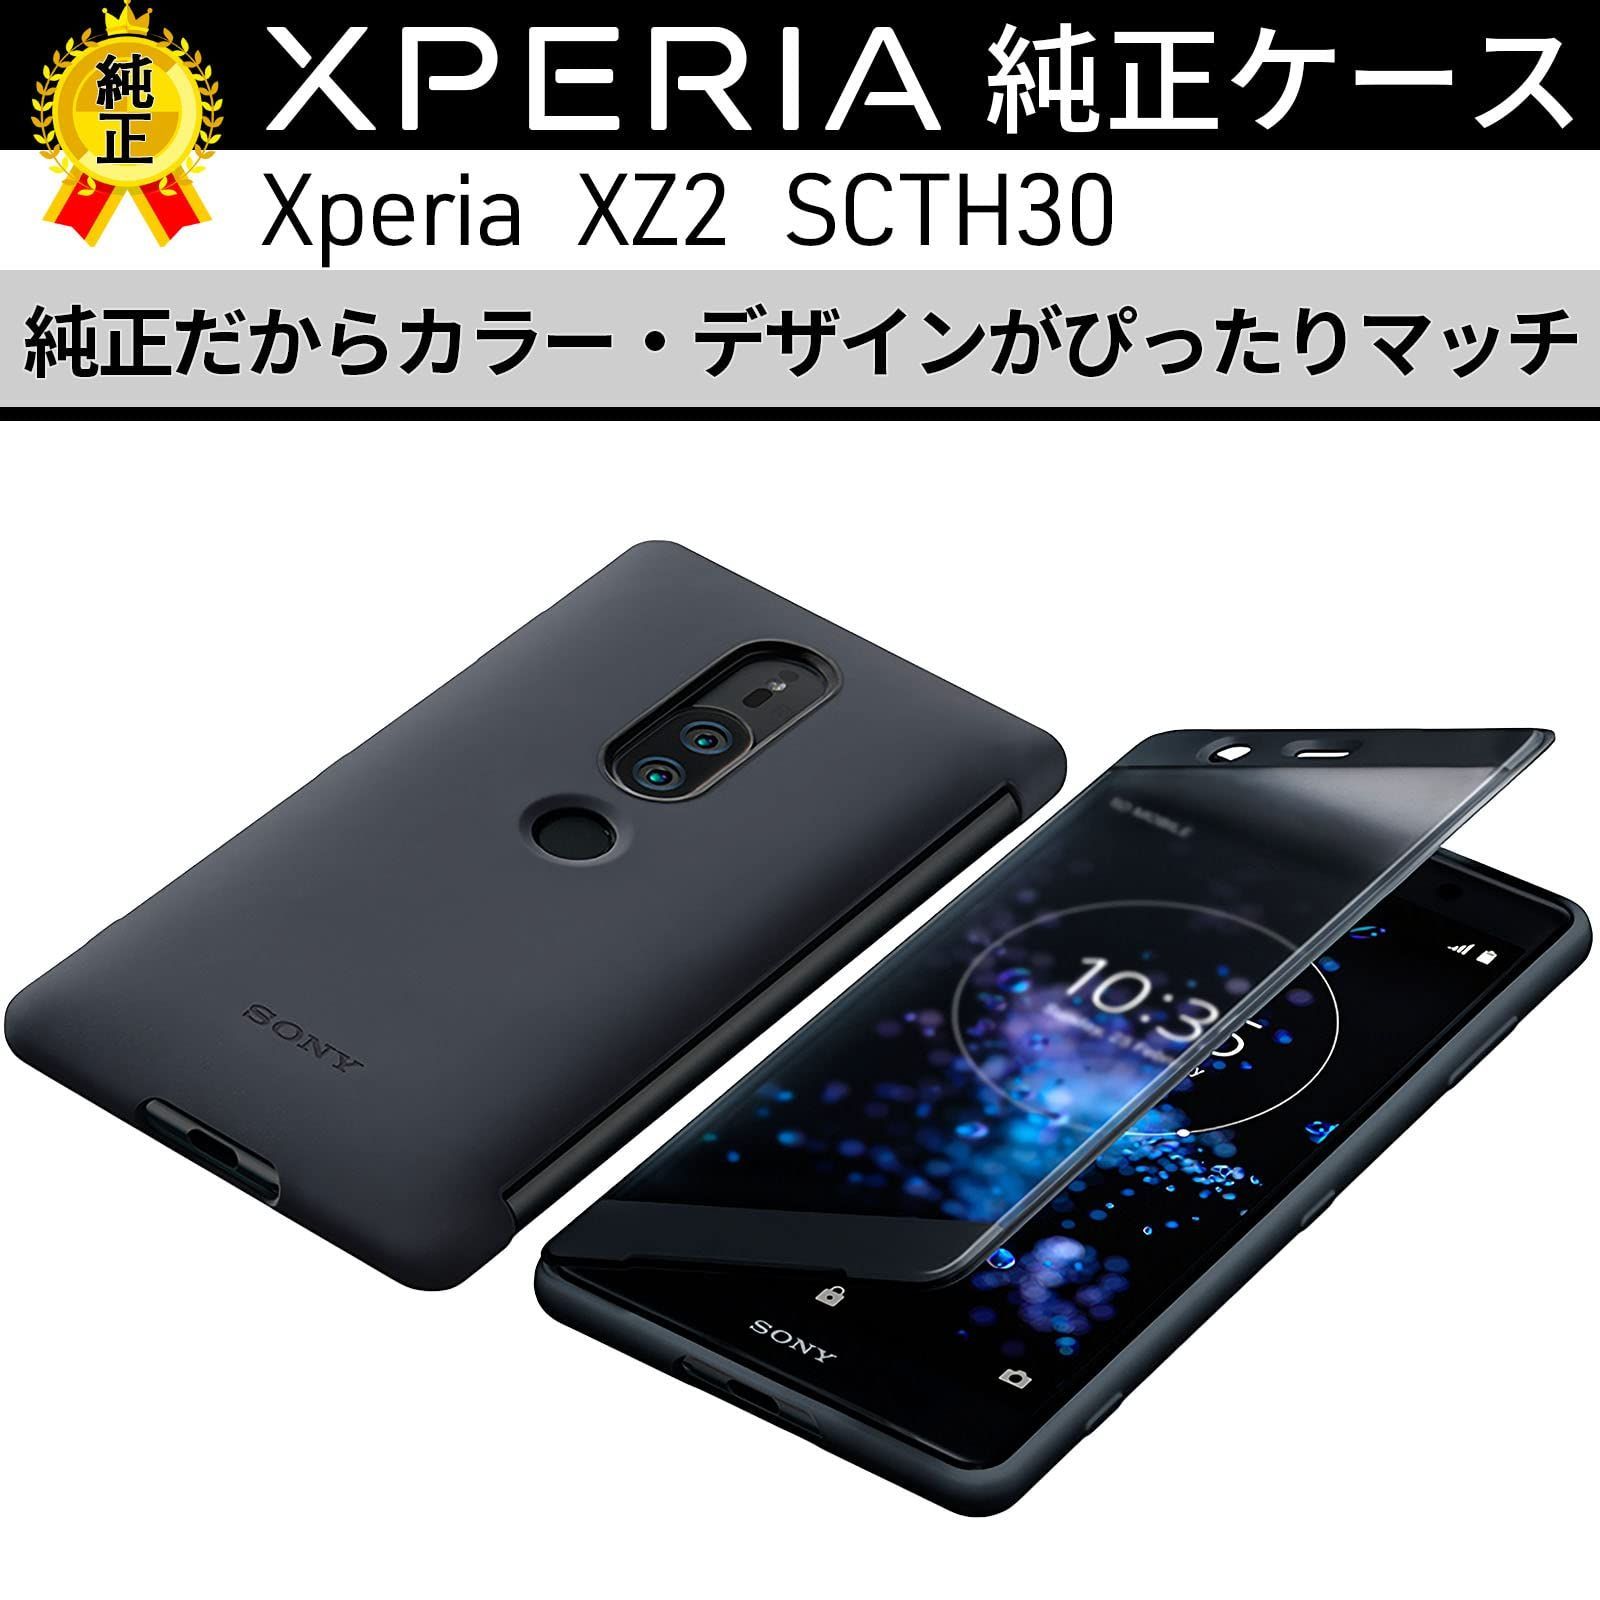 【人気商品】純正 ケース SONY Xperia XZ2 Premium ソニー エクスペリア プレミアム 手帳型 カバー スマホ ケース ブラック 黒 Black Style Cover Touch SCTH30JP/B SO-04K SOV38